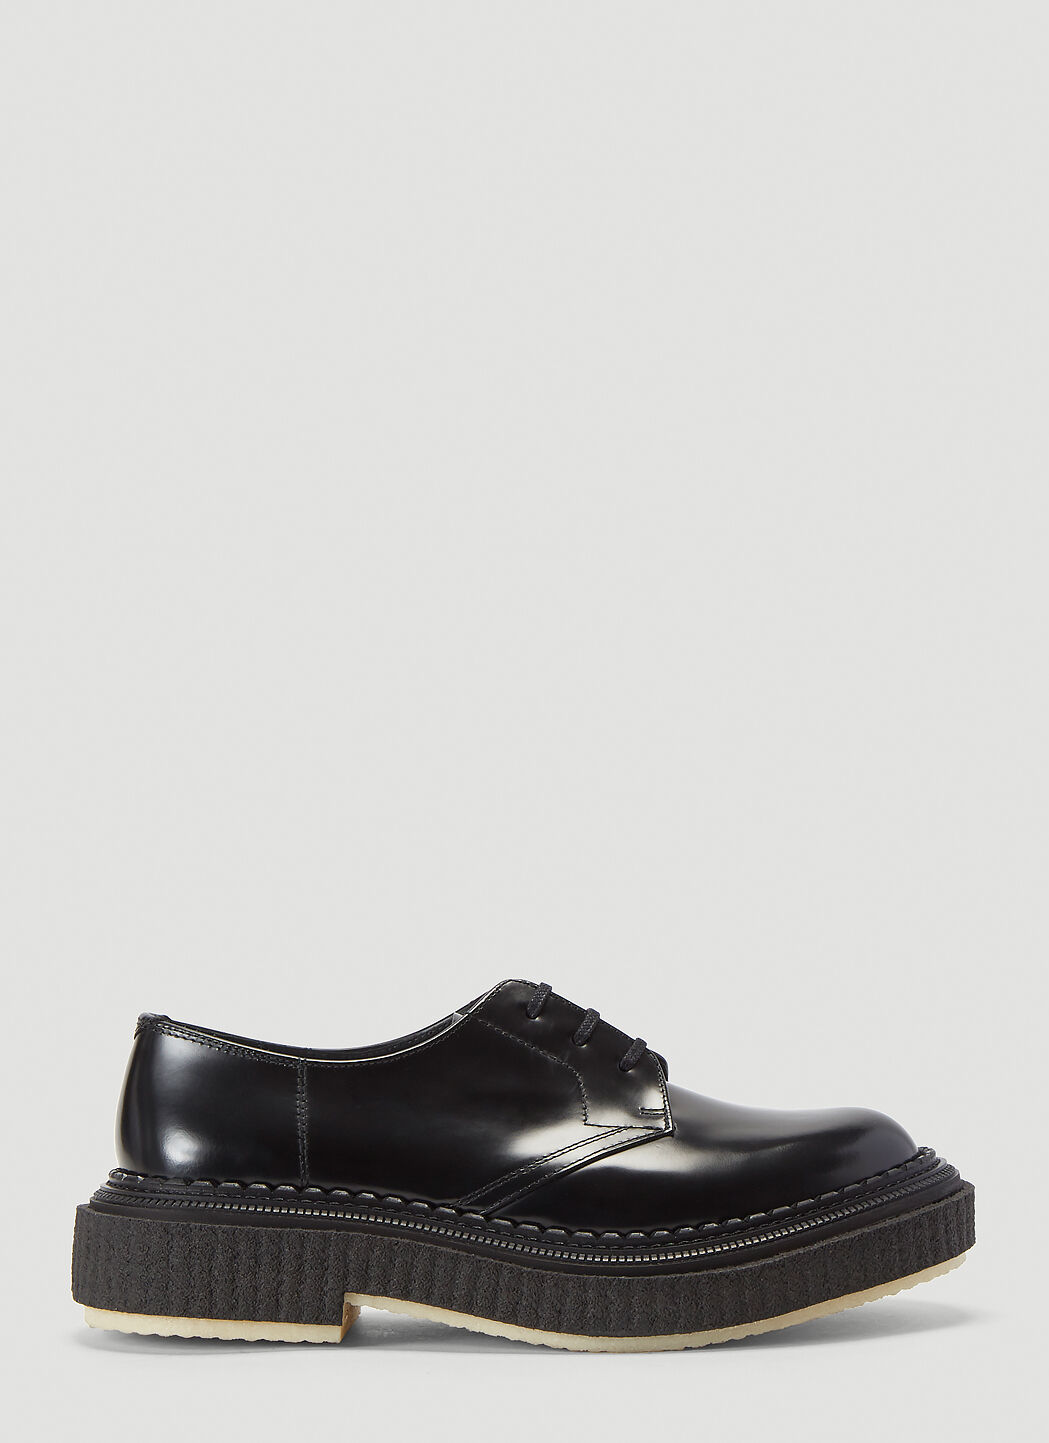 Saint Laurent Type 132 Lace-Up Shoes Black sla0237001